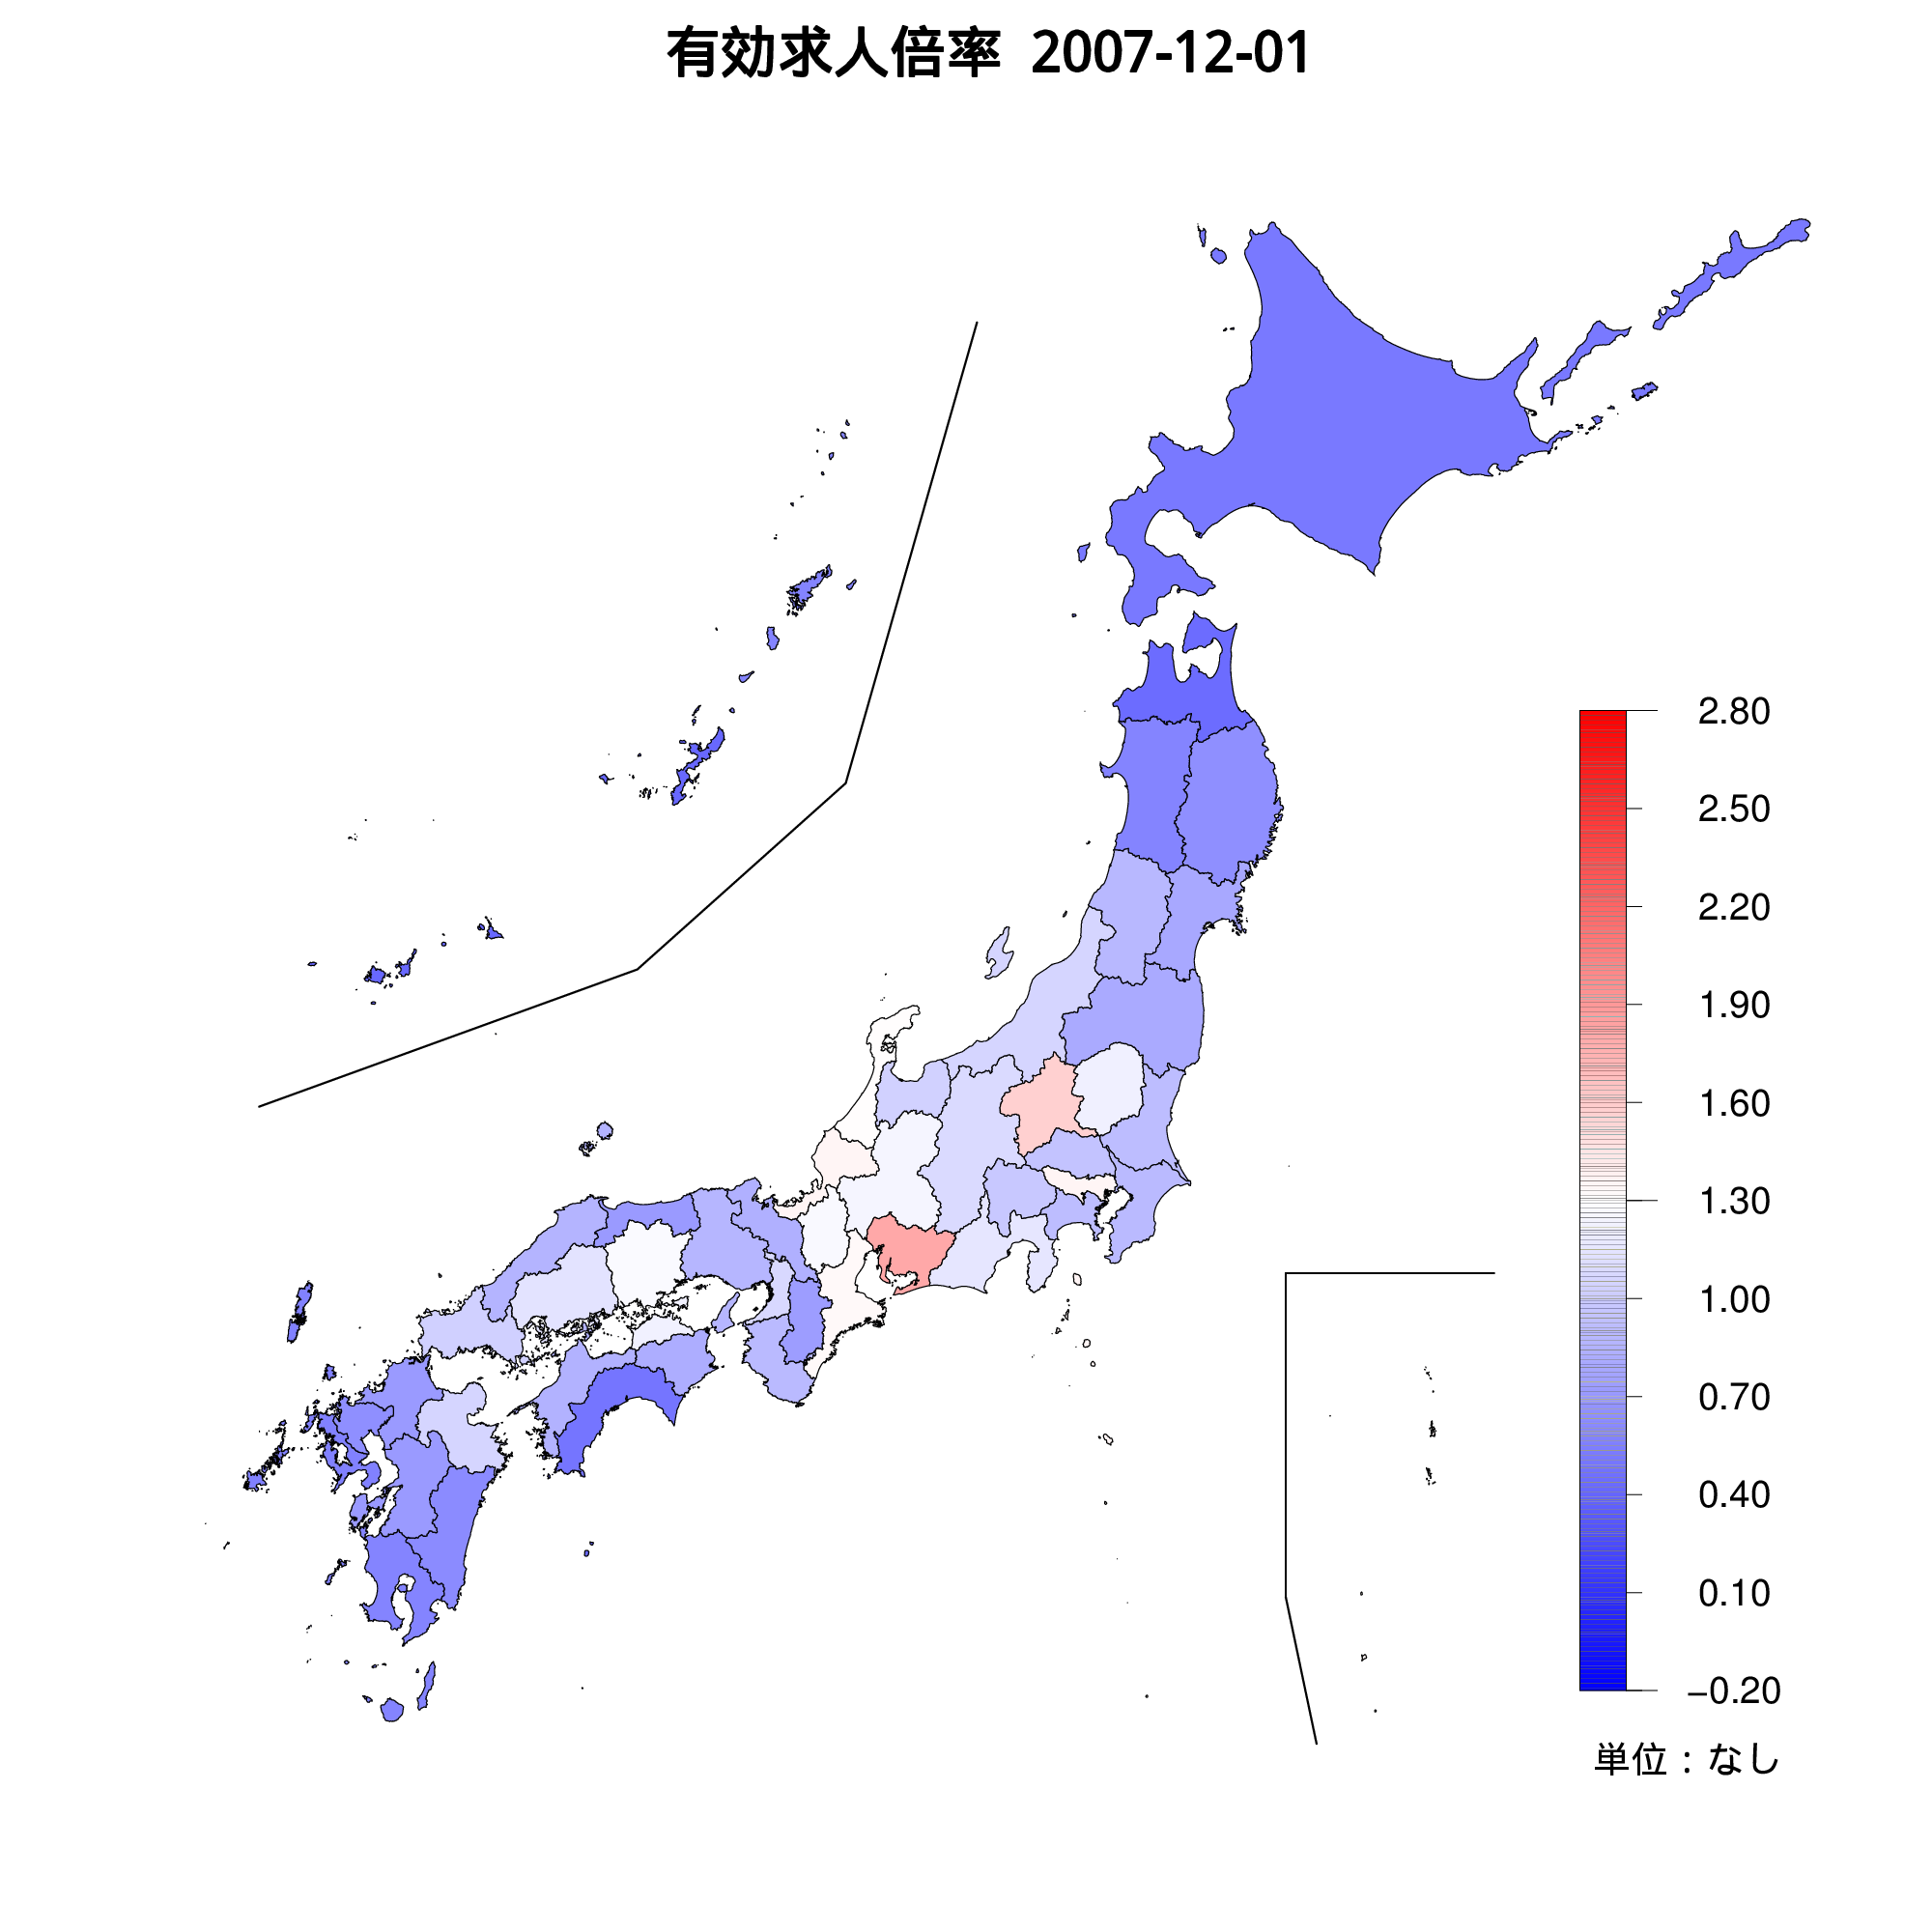 各都道府県の有効求人倍率を示す地図（2007年12月）